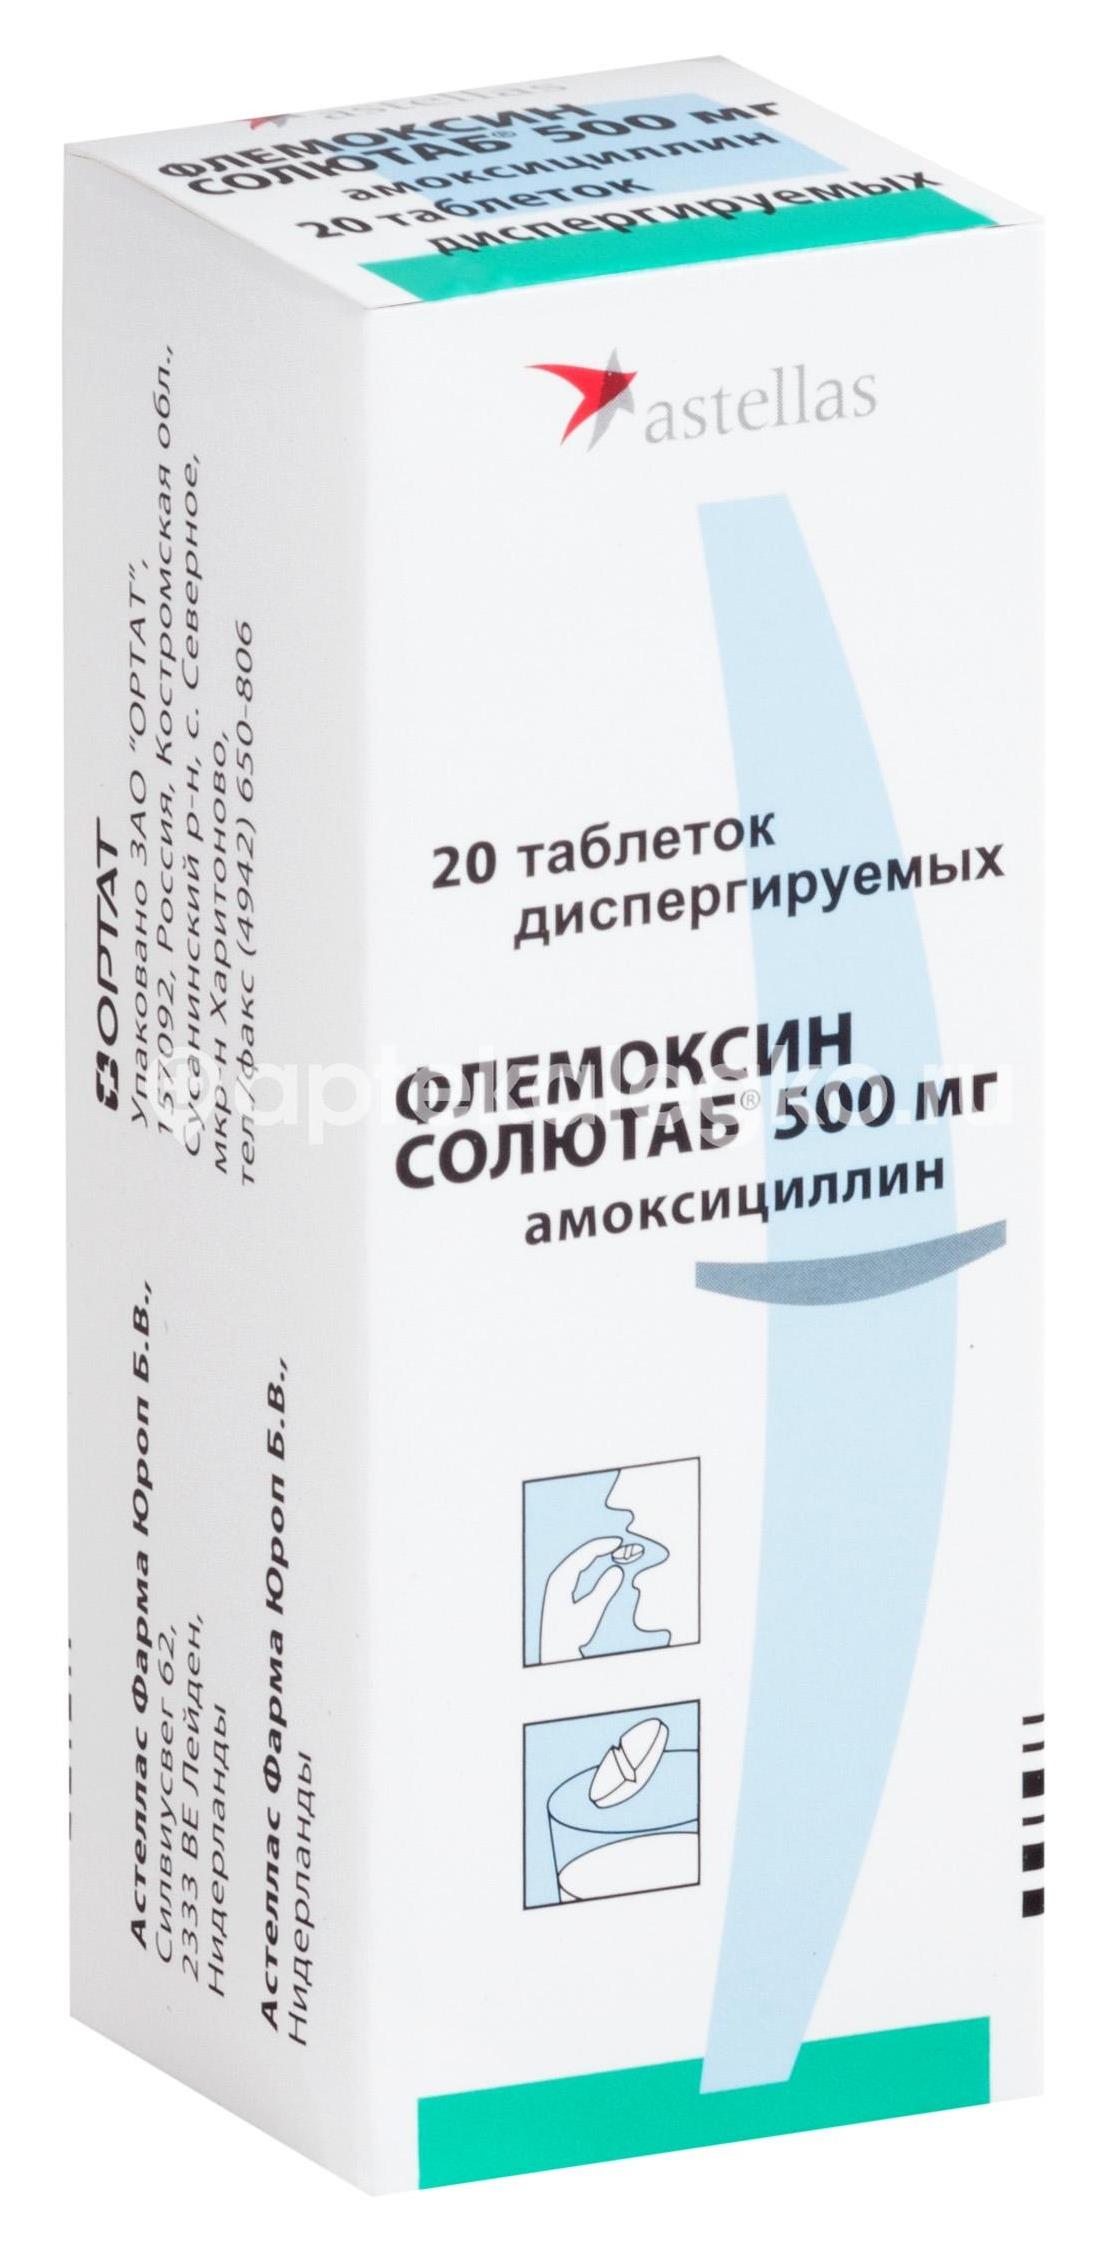 Флемоксин солютаб 500мг. 20шт. таблетки диспергируемые - 1